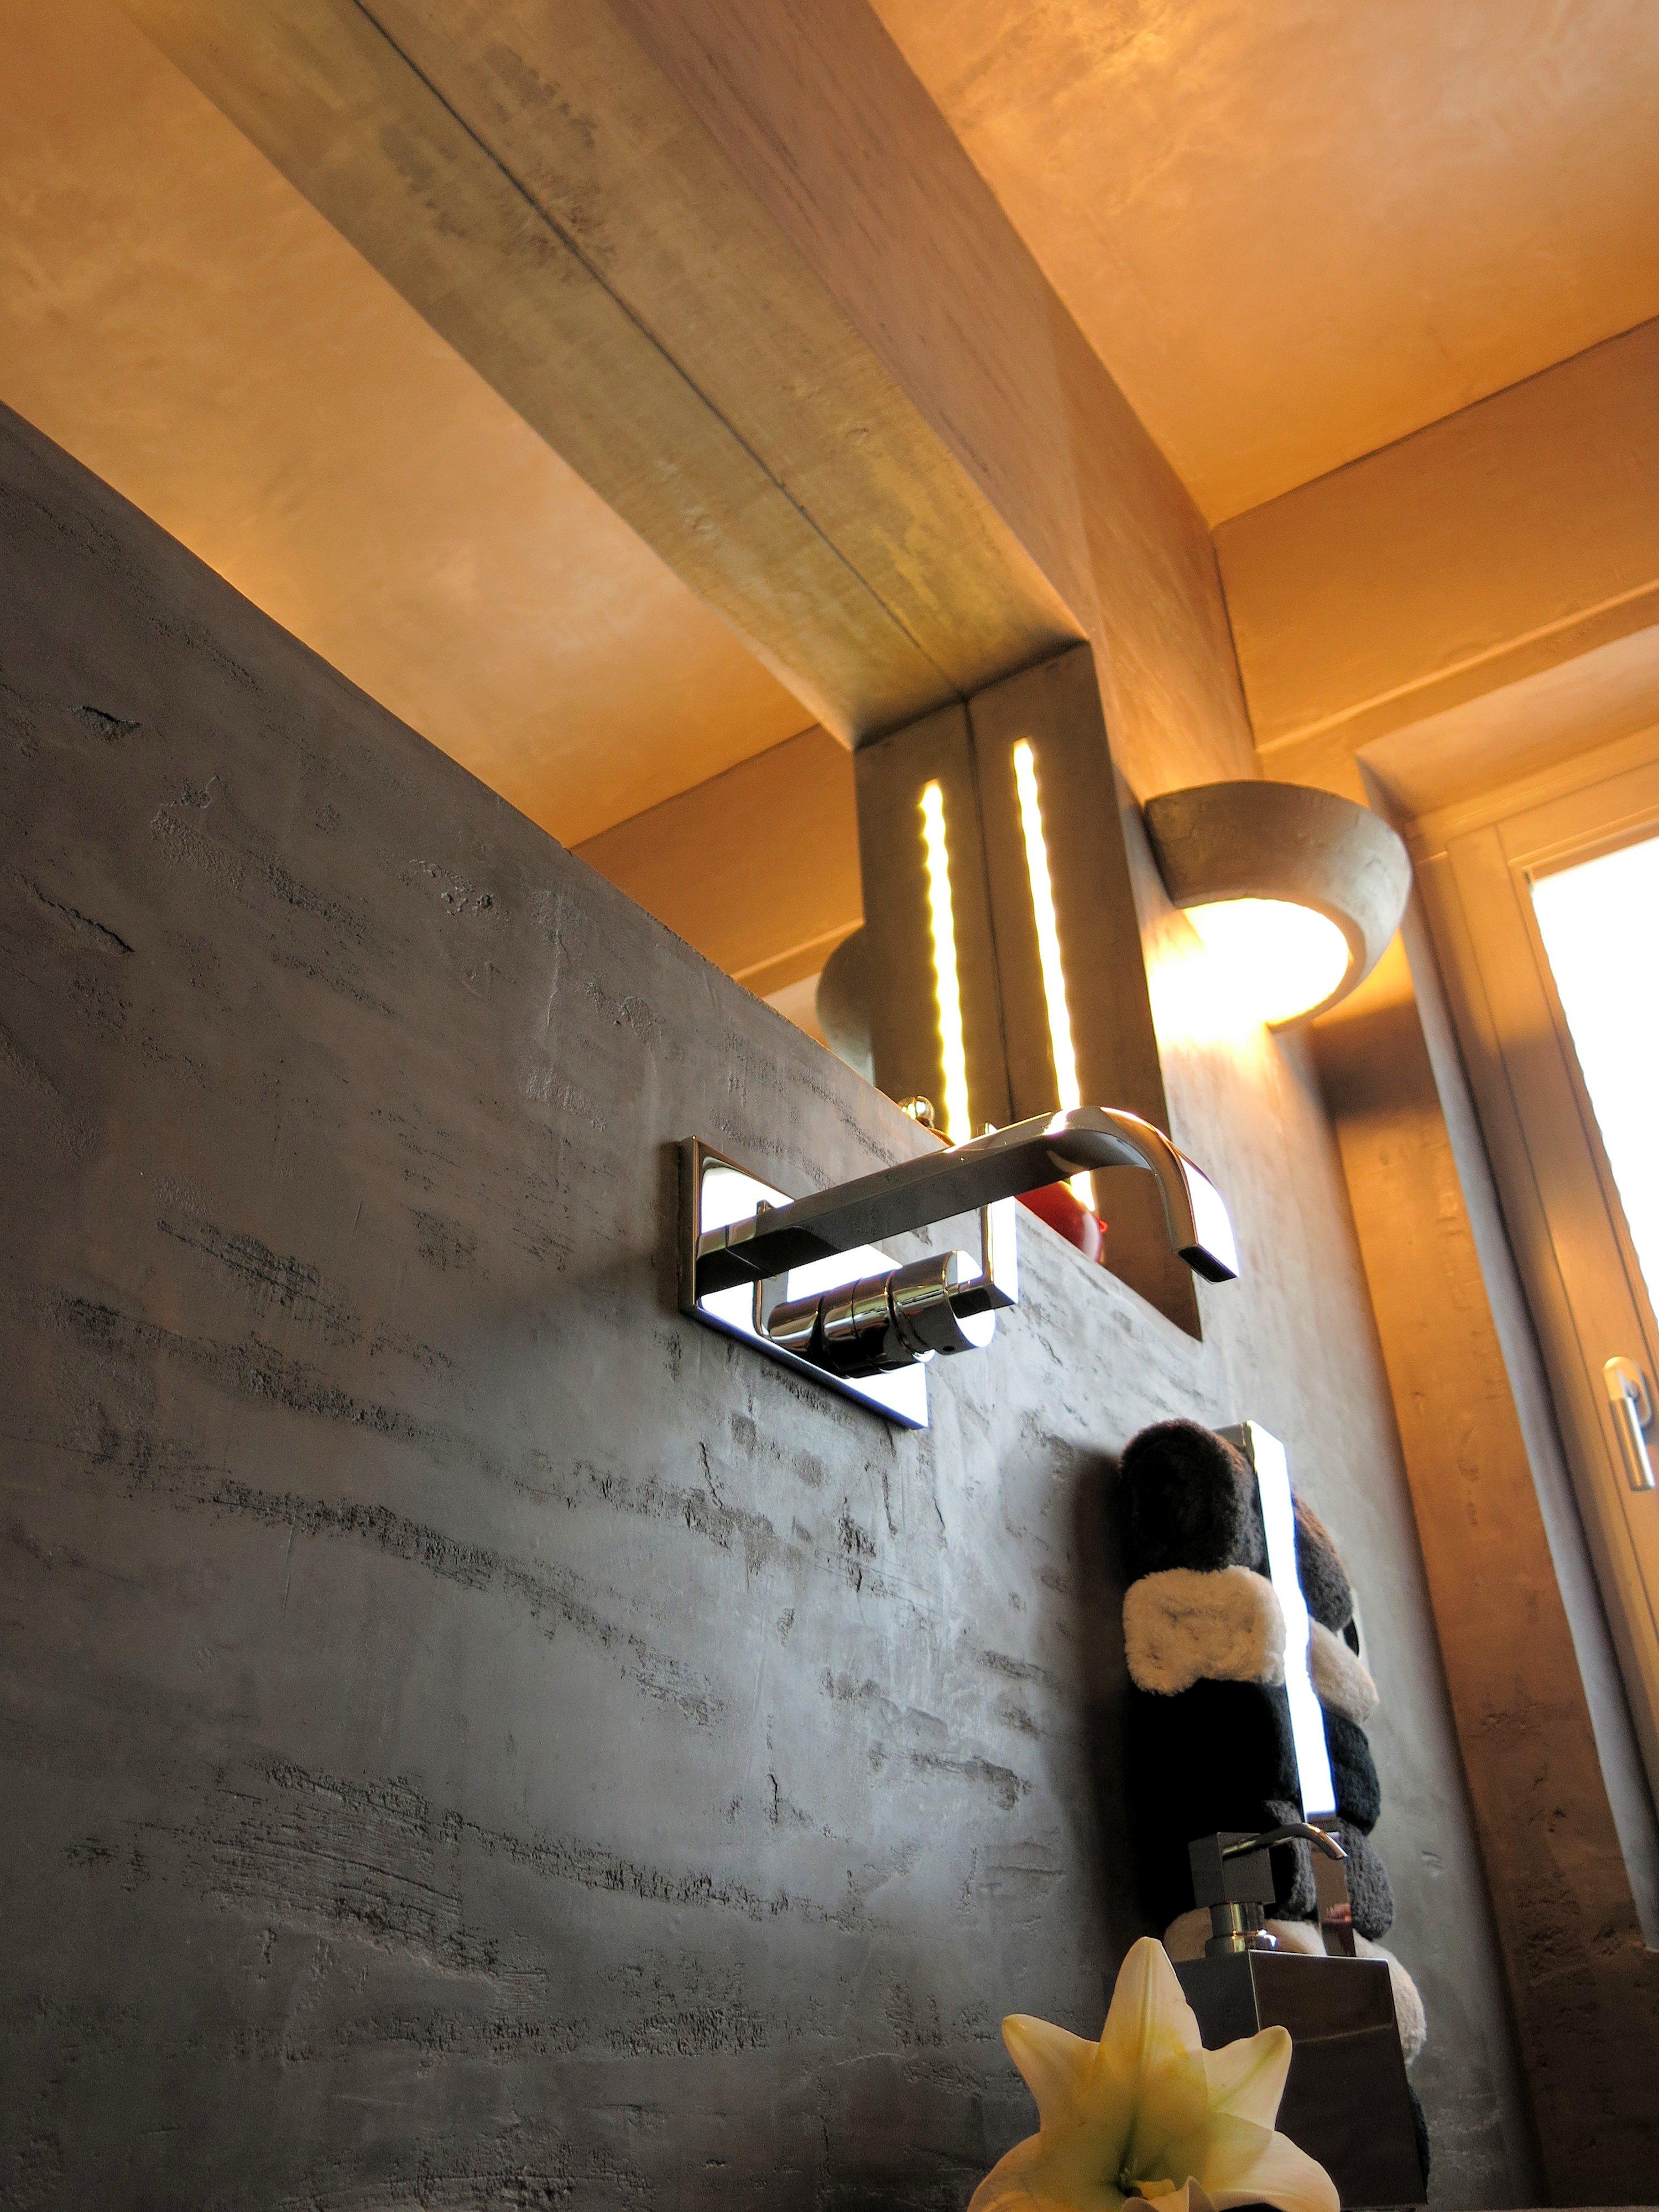 Eine moderne Badezimmer Wandgestaltung in unserem chaby Travertin #wandleuchte #handtuchhalter #grauewandfarbe #fliesenlosesbad #wandgestaltungbadezimmer ©www.wandmanufaktur.de